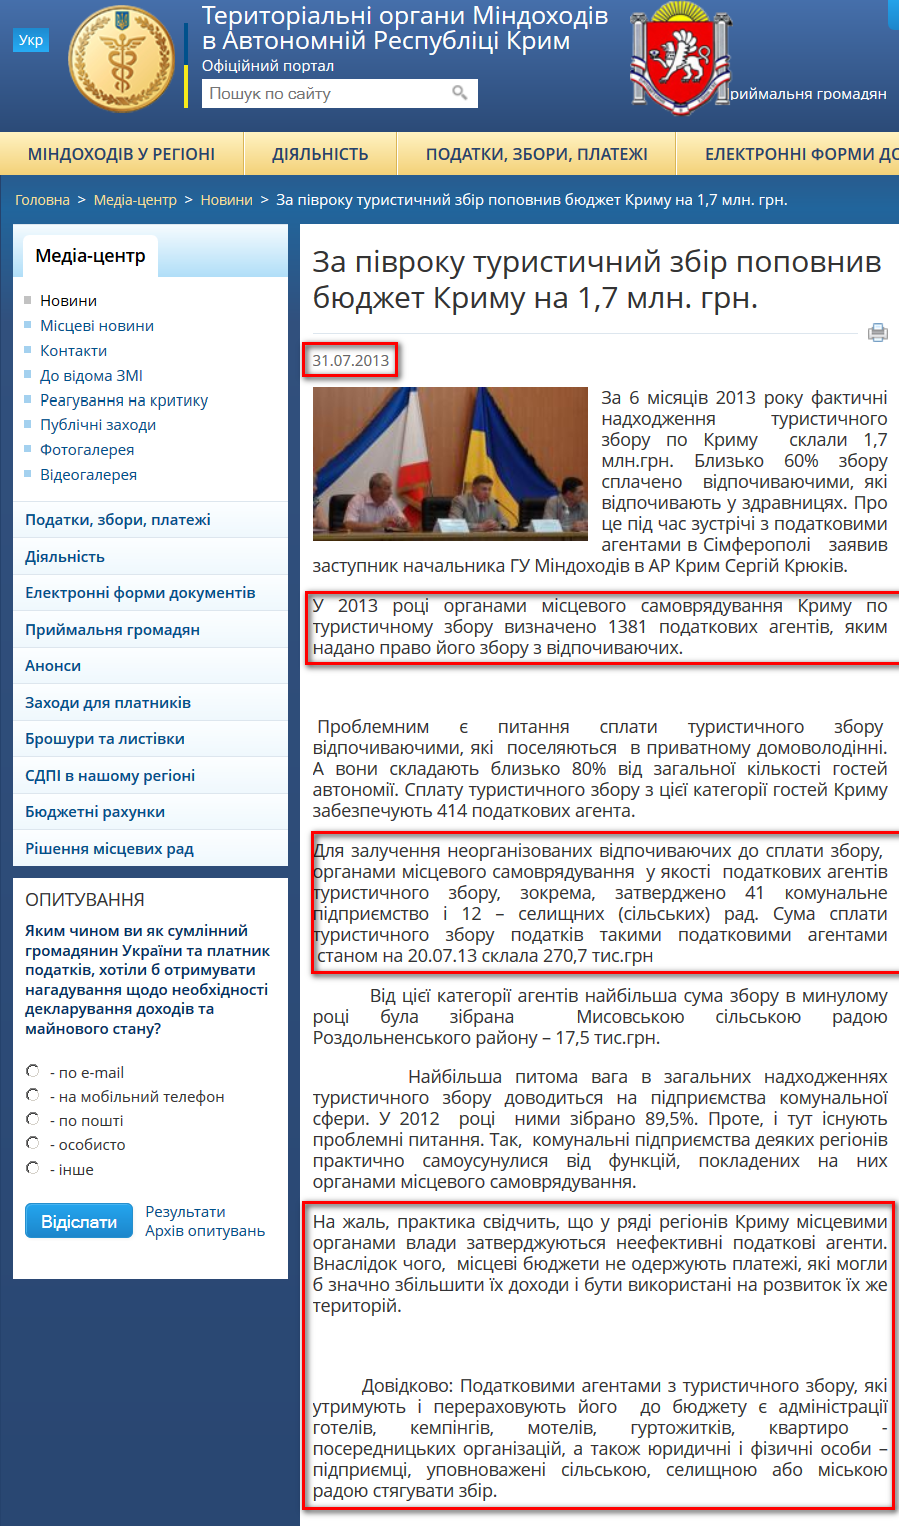 http://crimea.minrd.gov.ua/media-ark/news-ark/105682.html